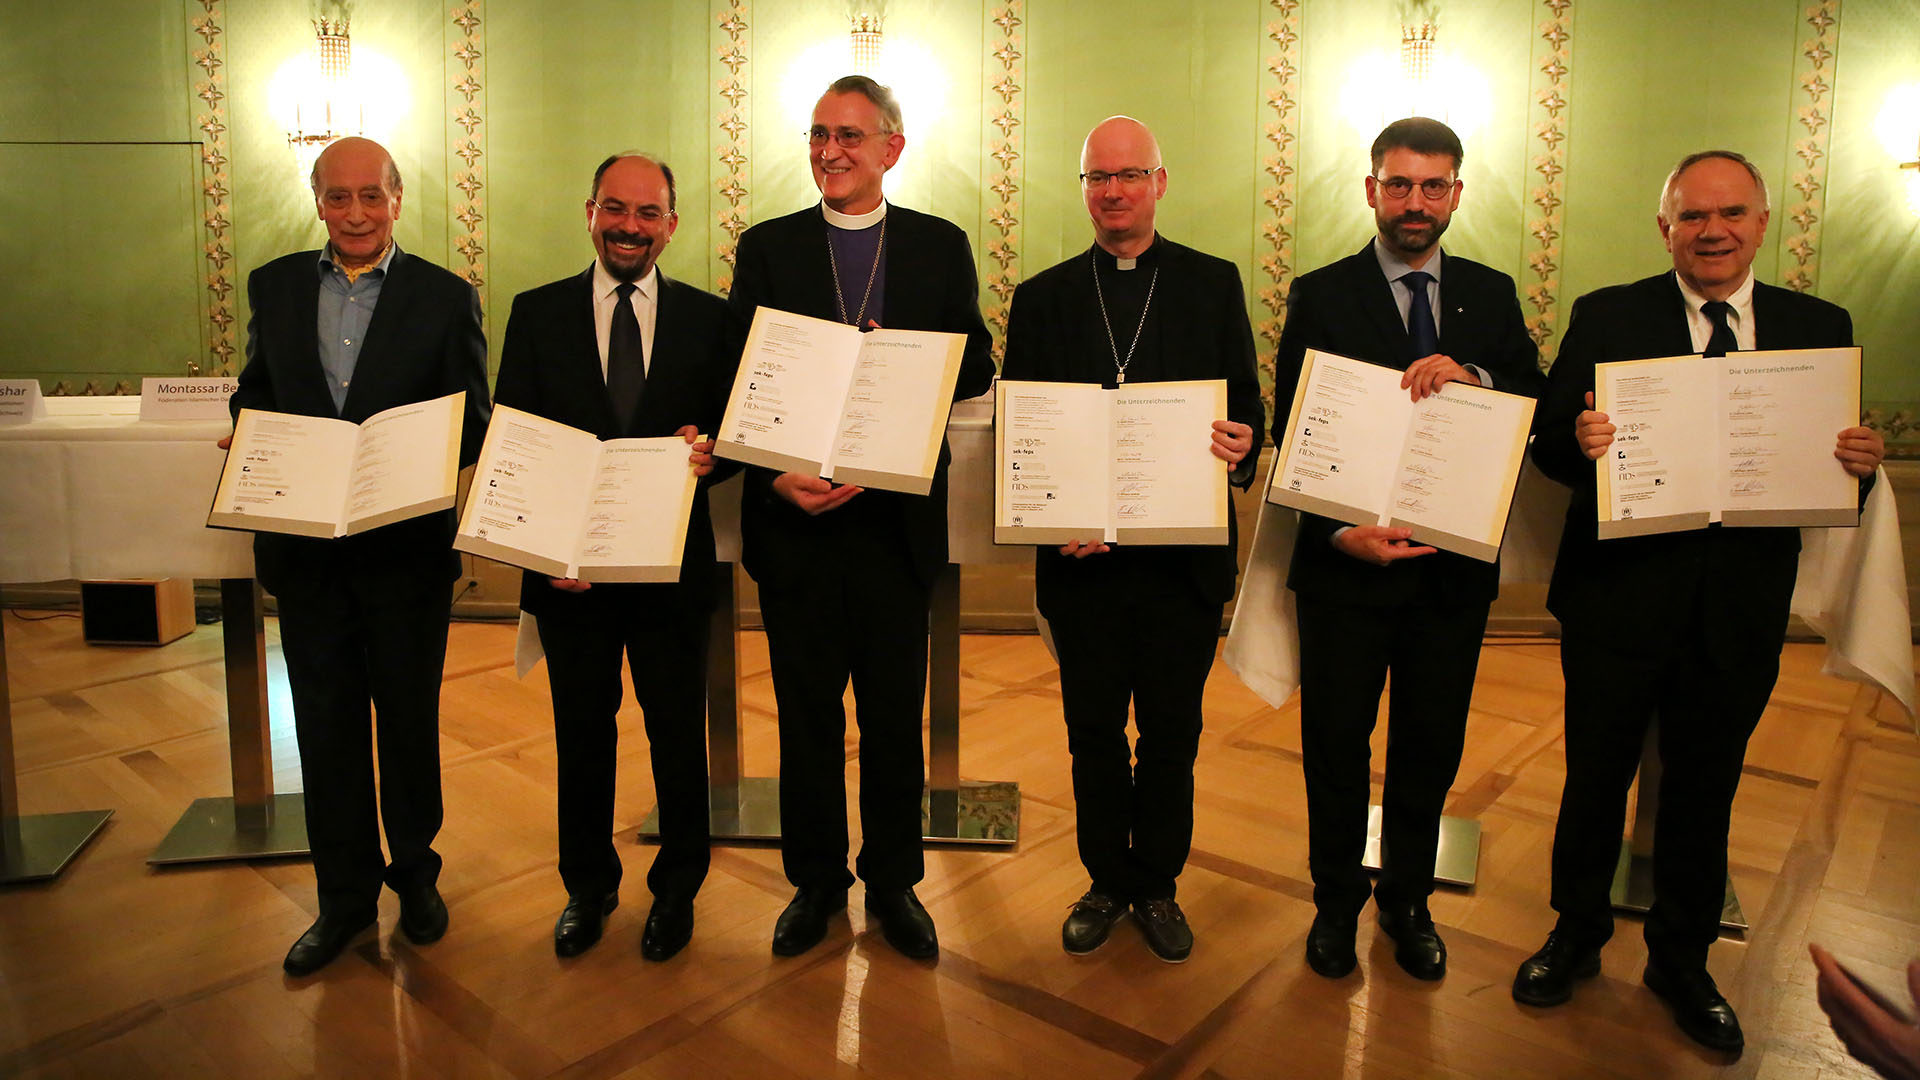 Les représentants des religions ont signé l'appel pour les réfugiés le 7 novembre 2018 à Berne. | © B. Hallet